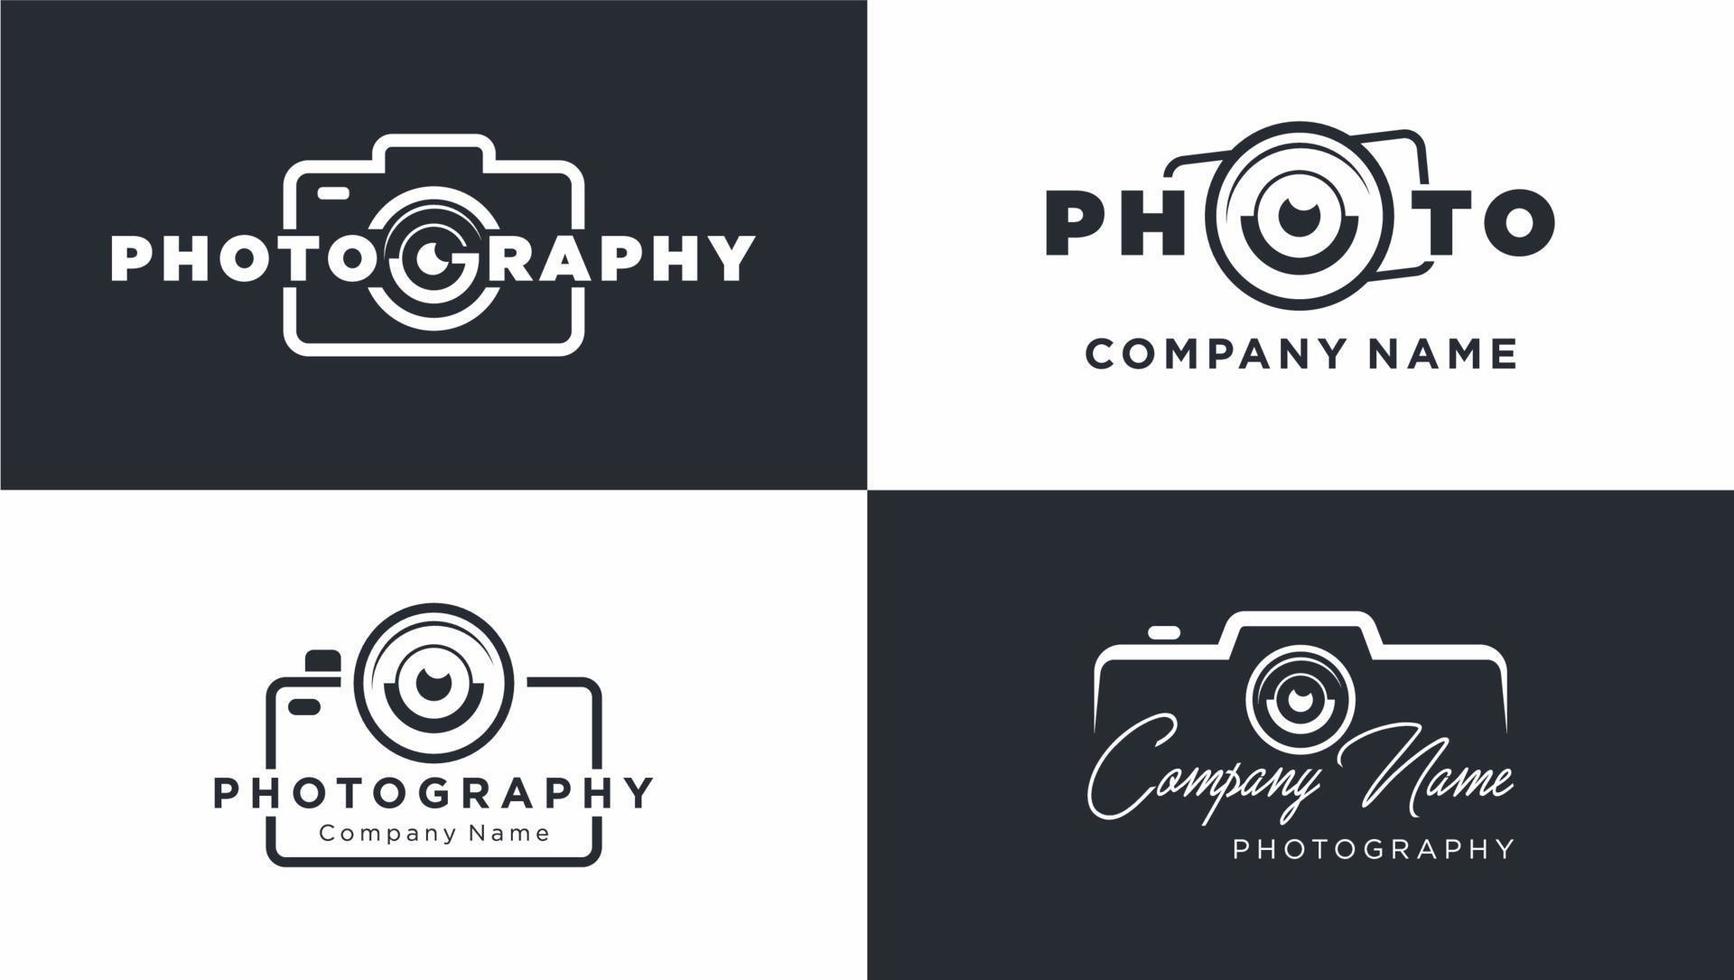 design logo photography company name vector